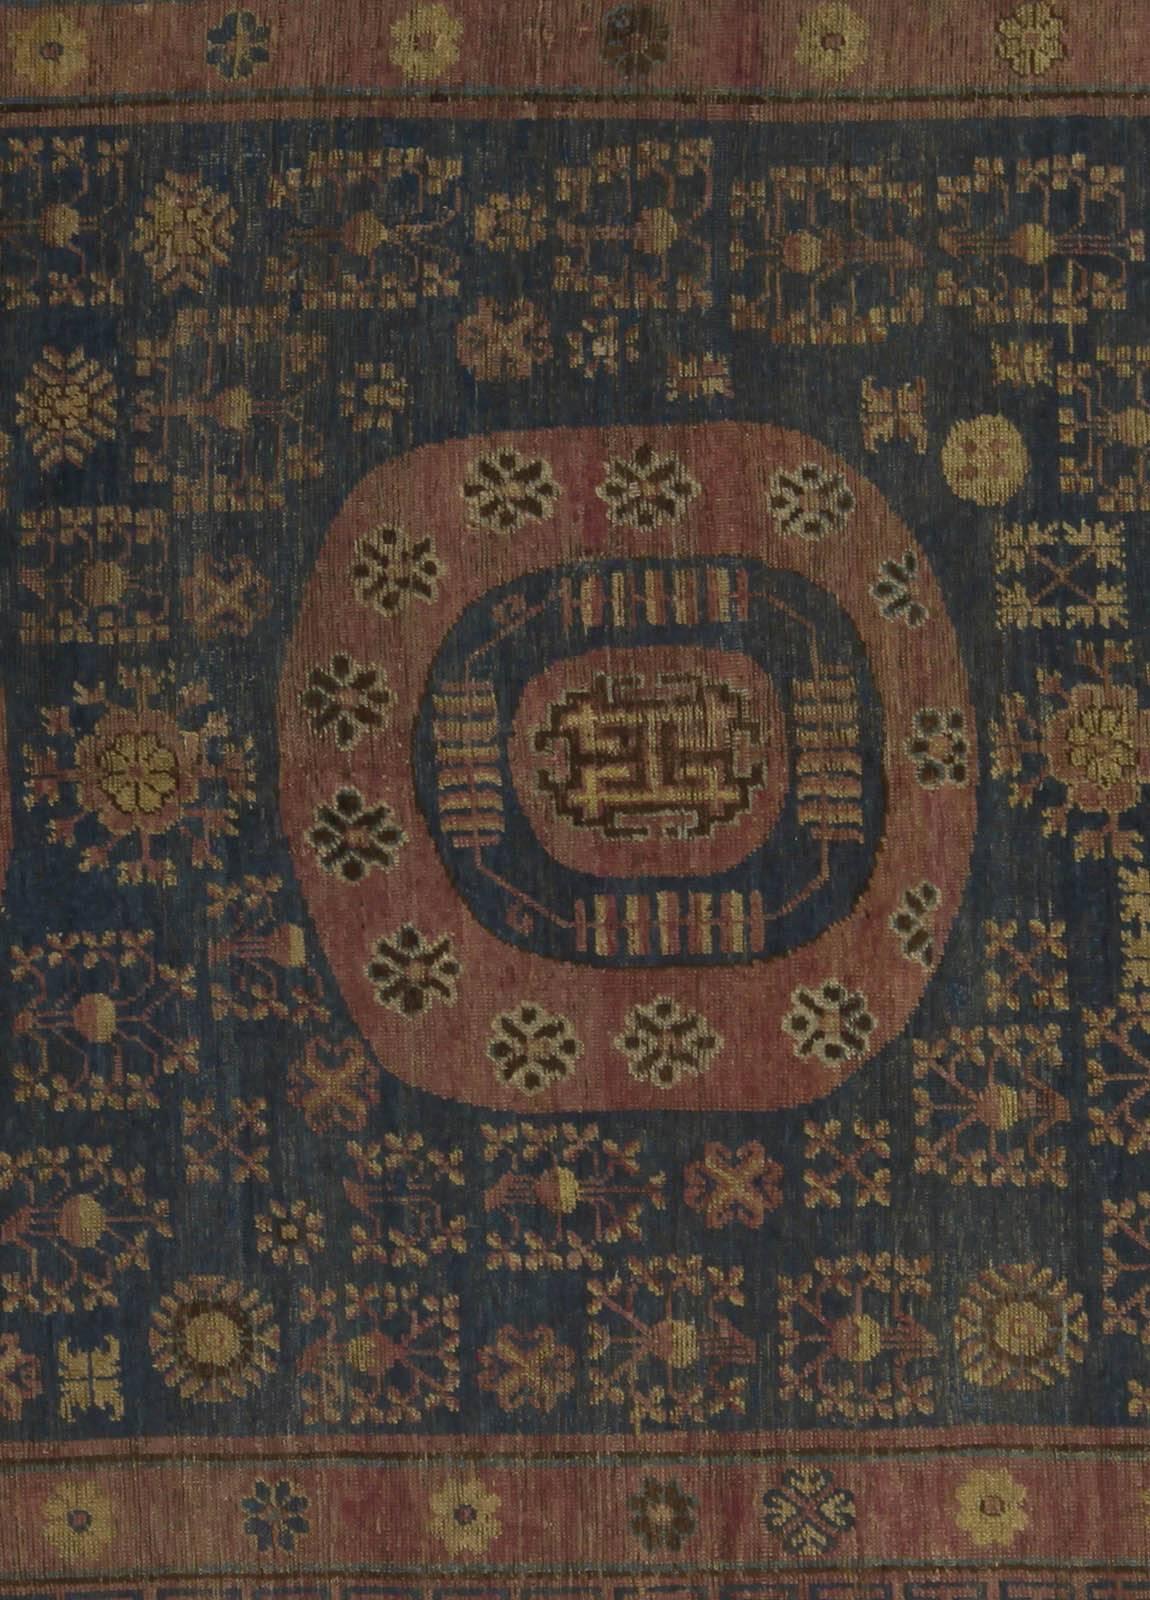 Vintage Samarkand 'Khotan' Teppich
Größe: 7'0